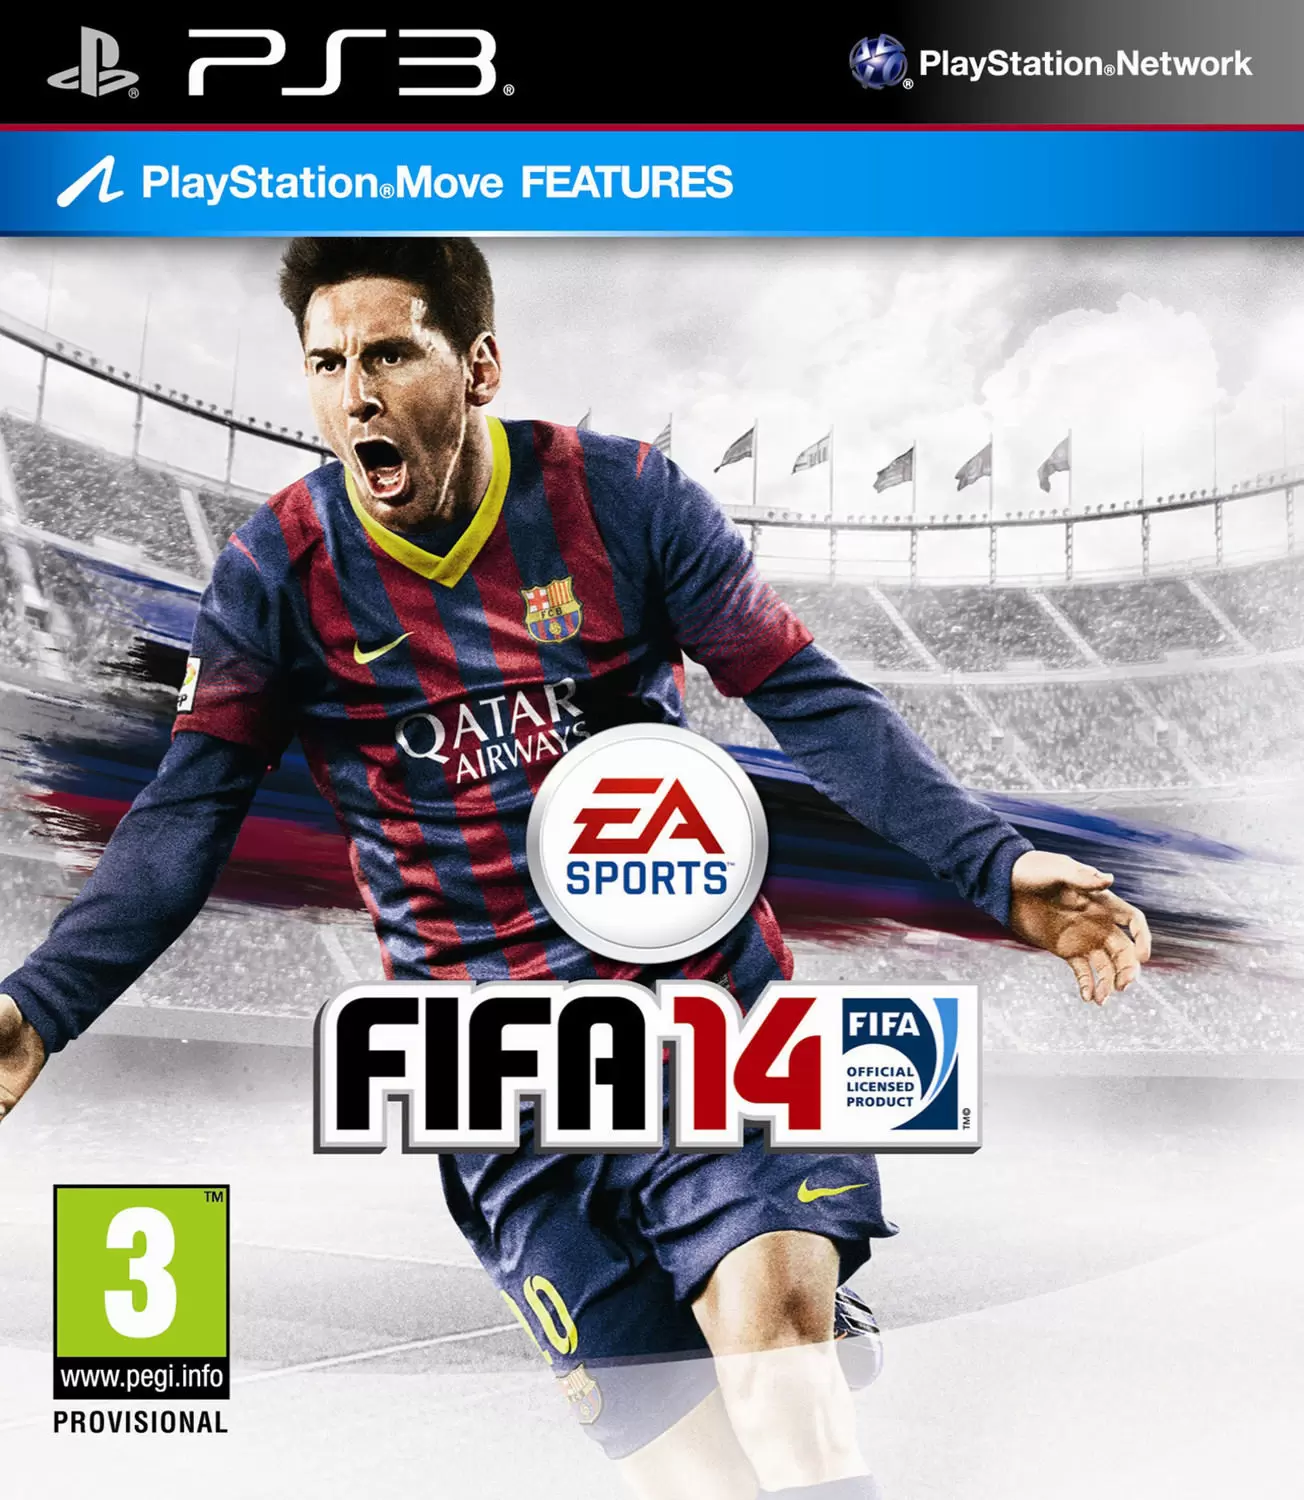 PS3 Games - FIFA 14